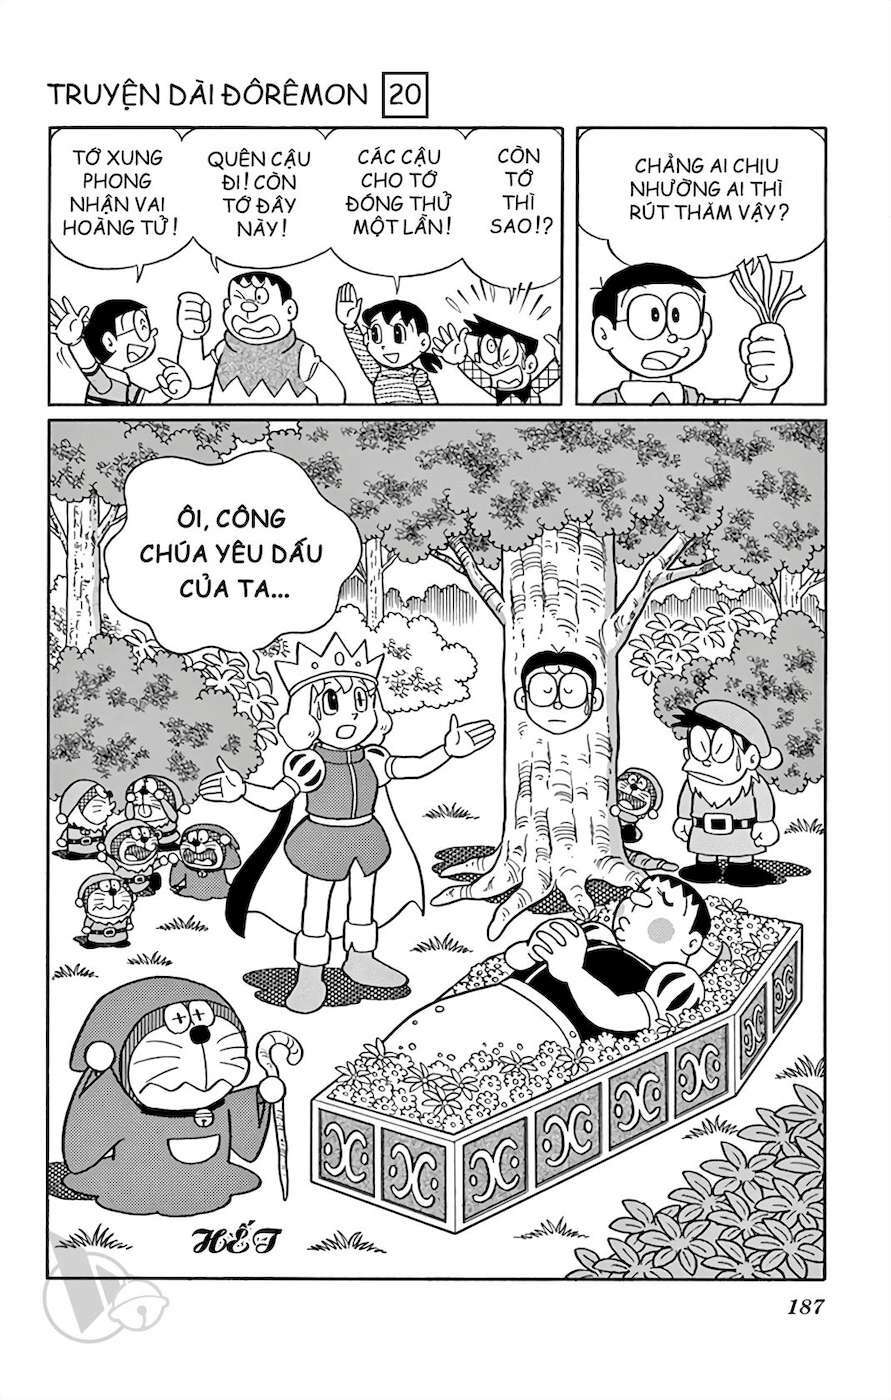 Truyện Tranh Doraemon: Truyền Thuyết Về Vua Mặt Trời Nôbita trang 186